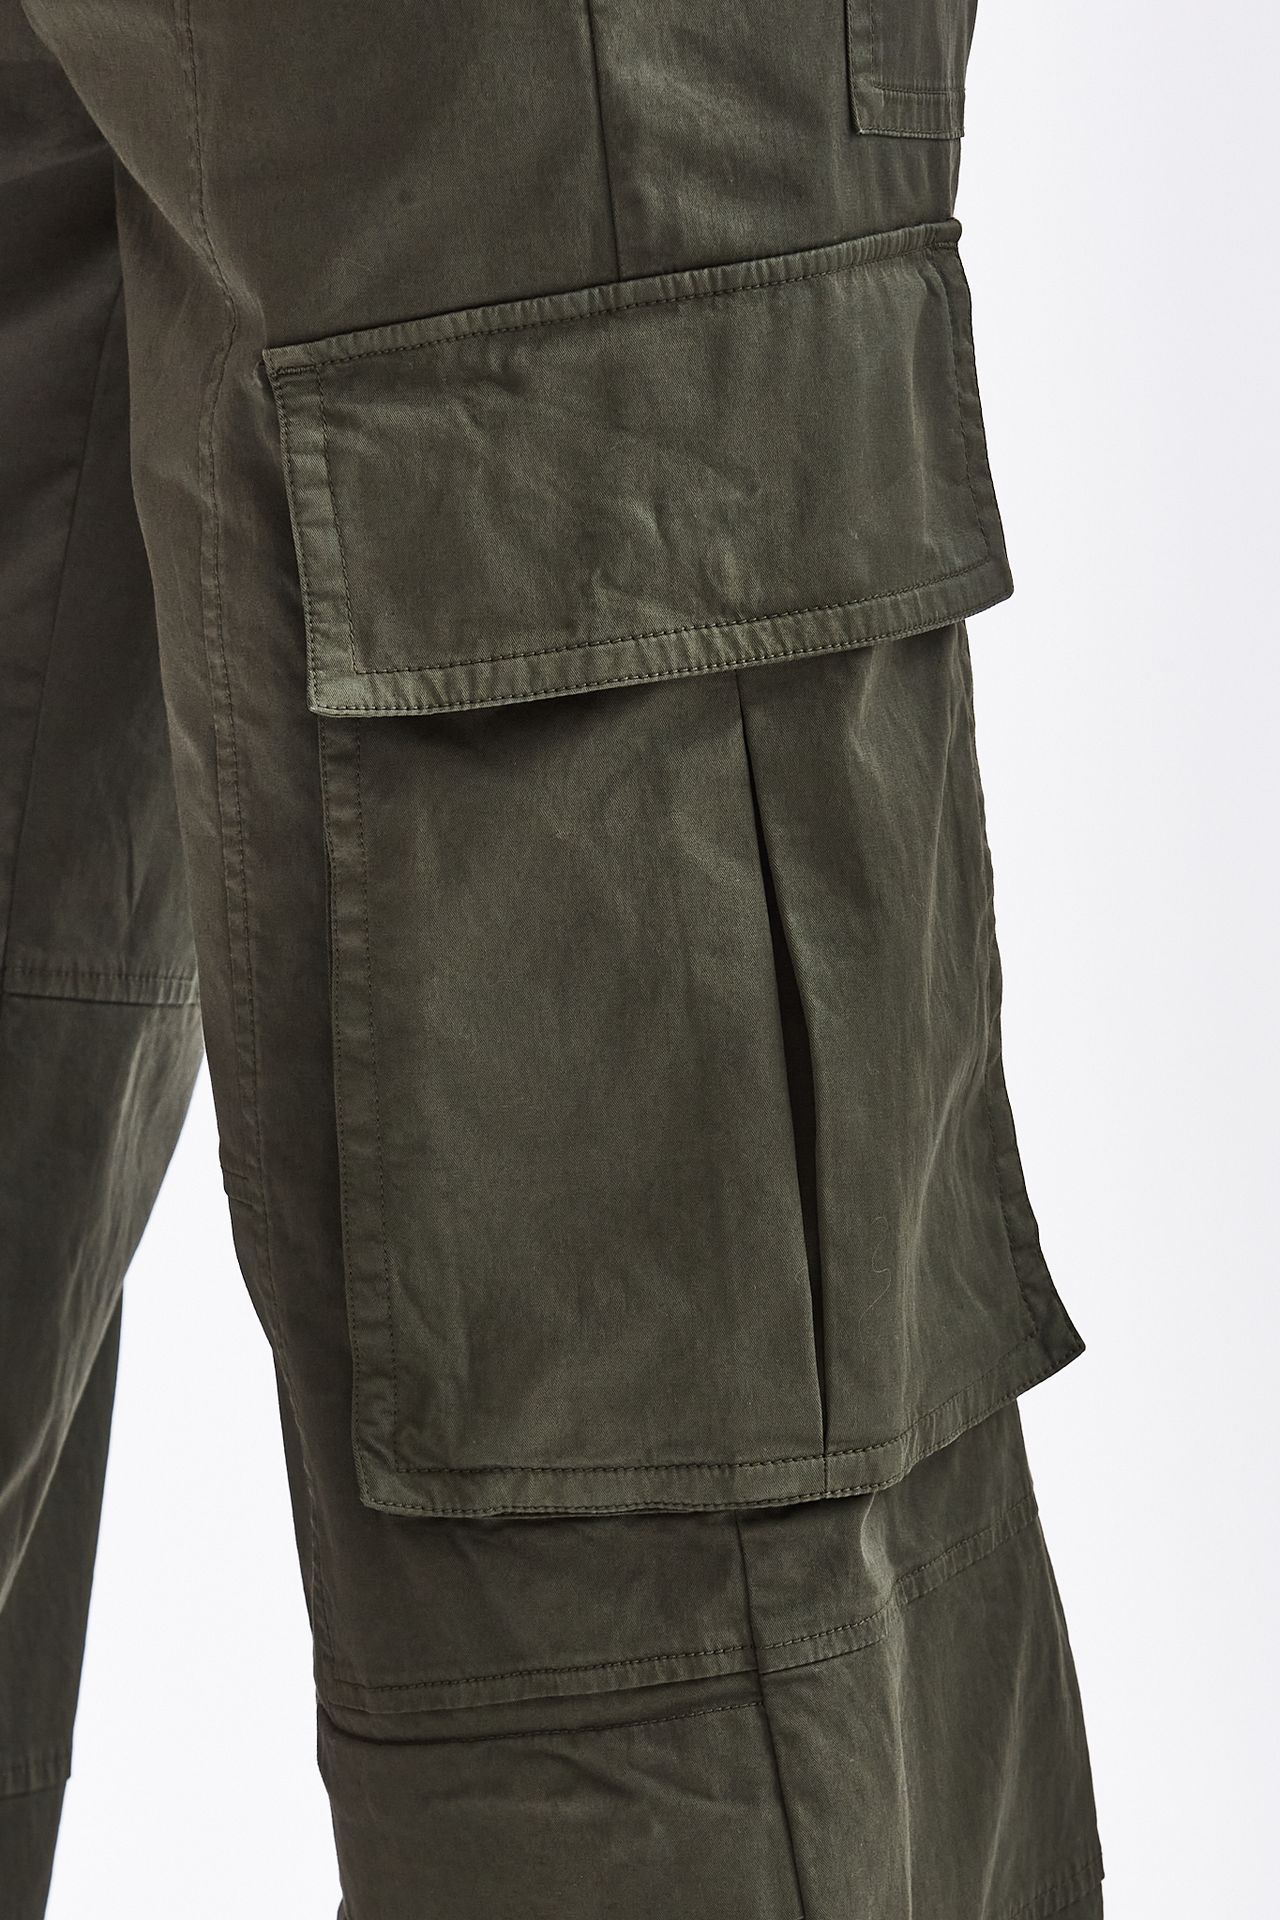 Pantalone cargo verde militare